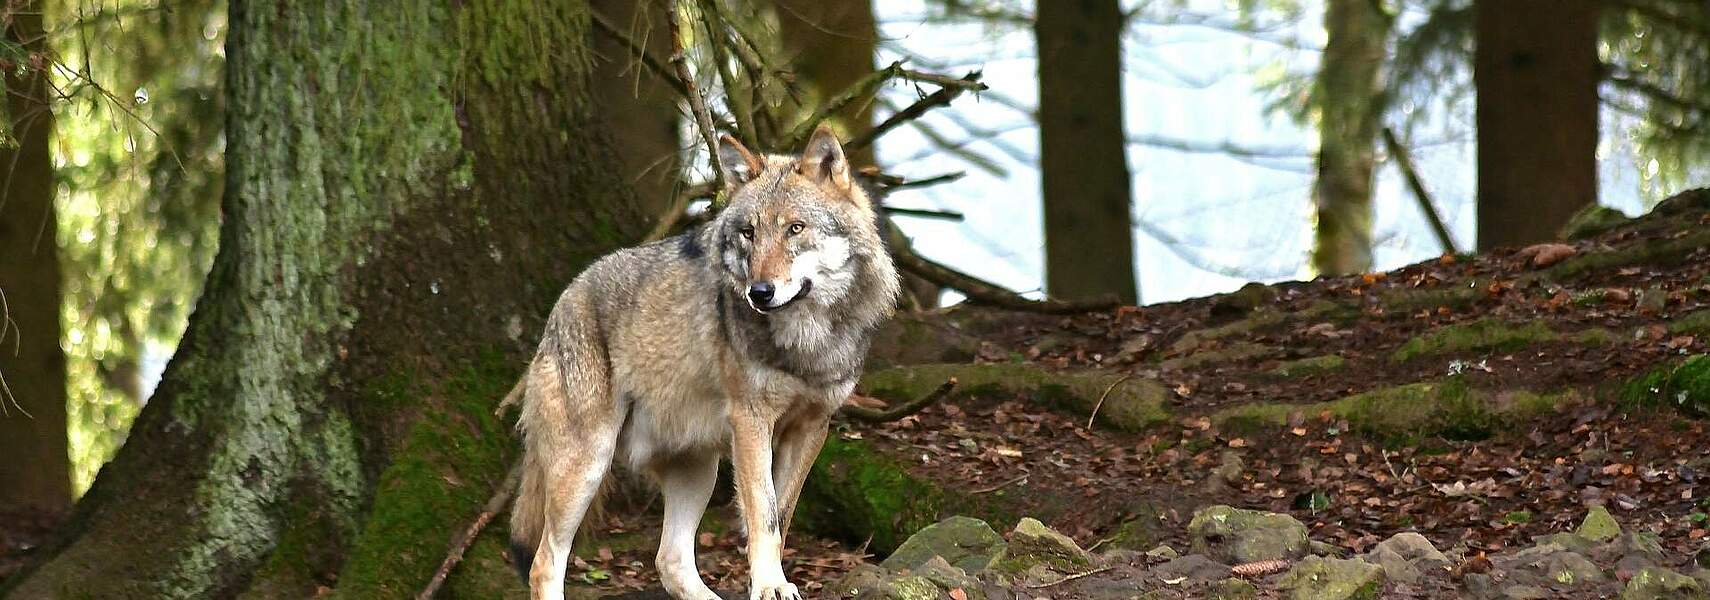 Aktionsbündnis fordert Umweltminister zur Wolfsregulierung auf